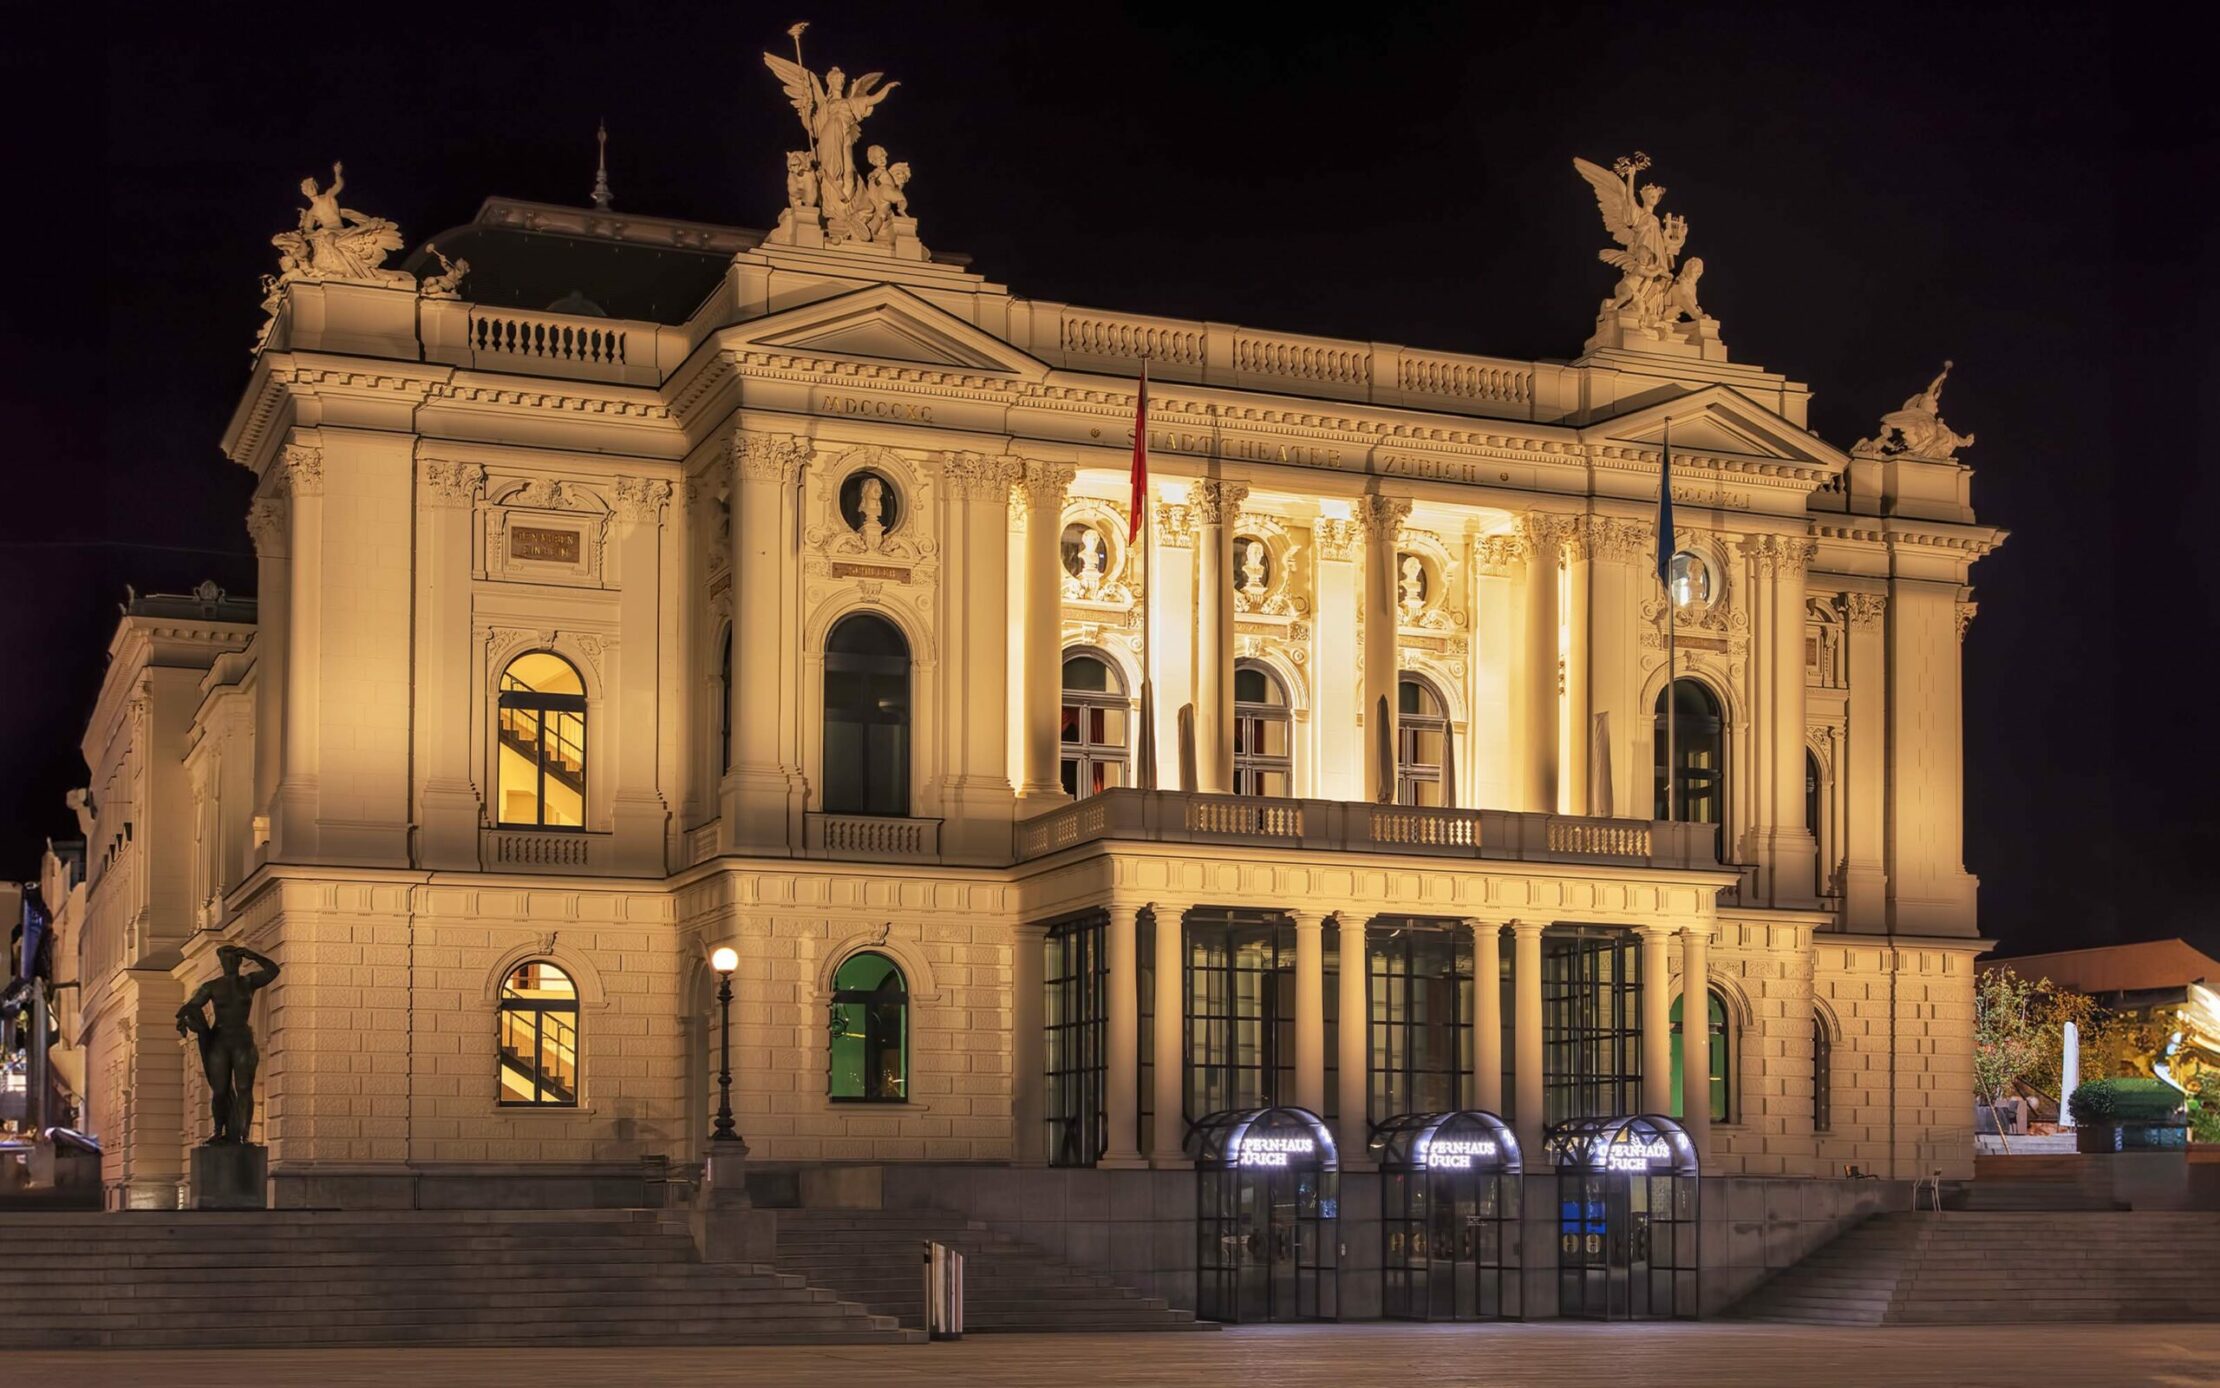 Zurich Opera House at night